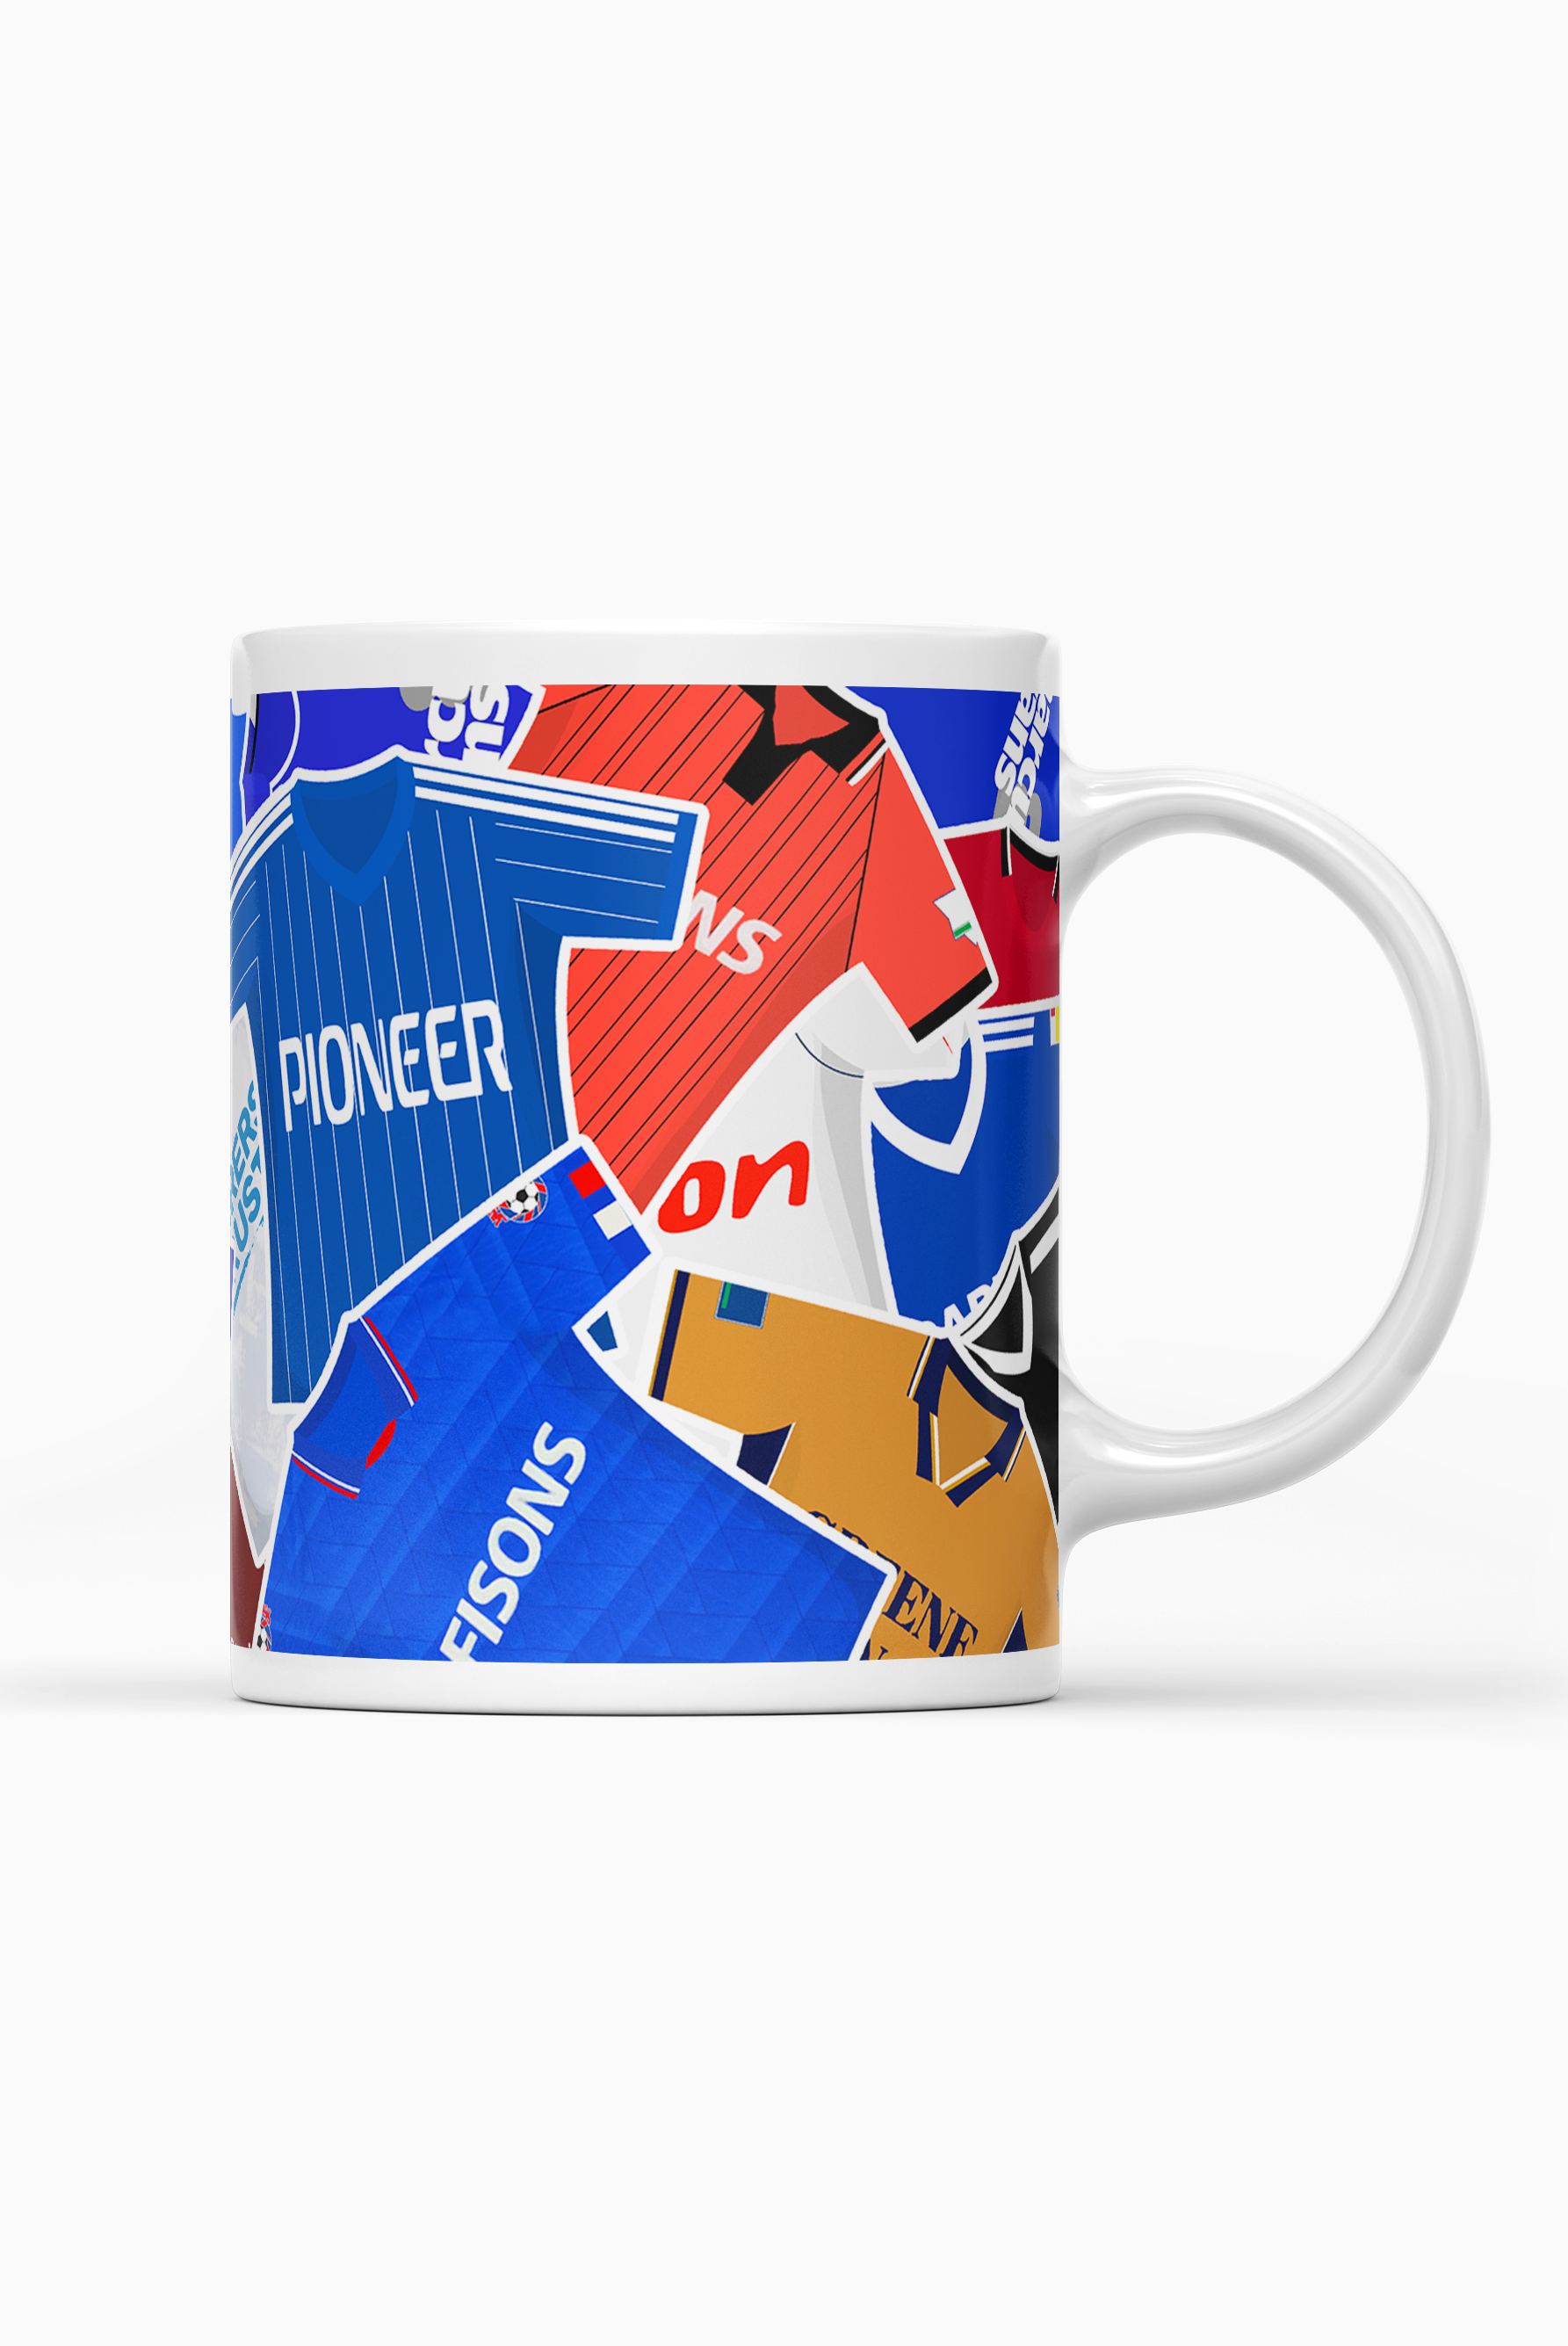 Ipswich / Iconic Shirts Mug